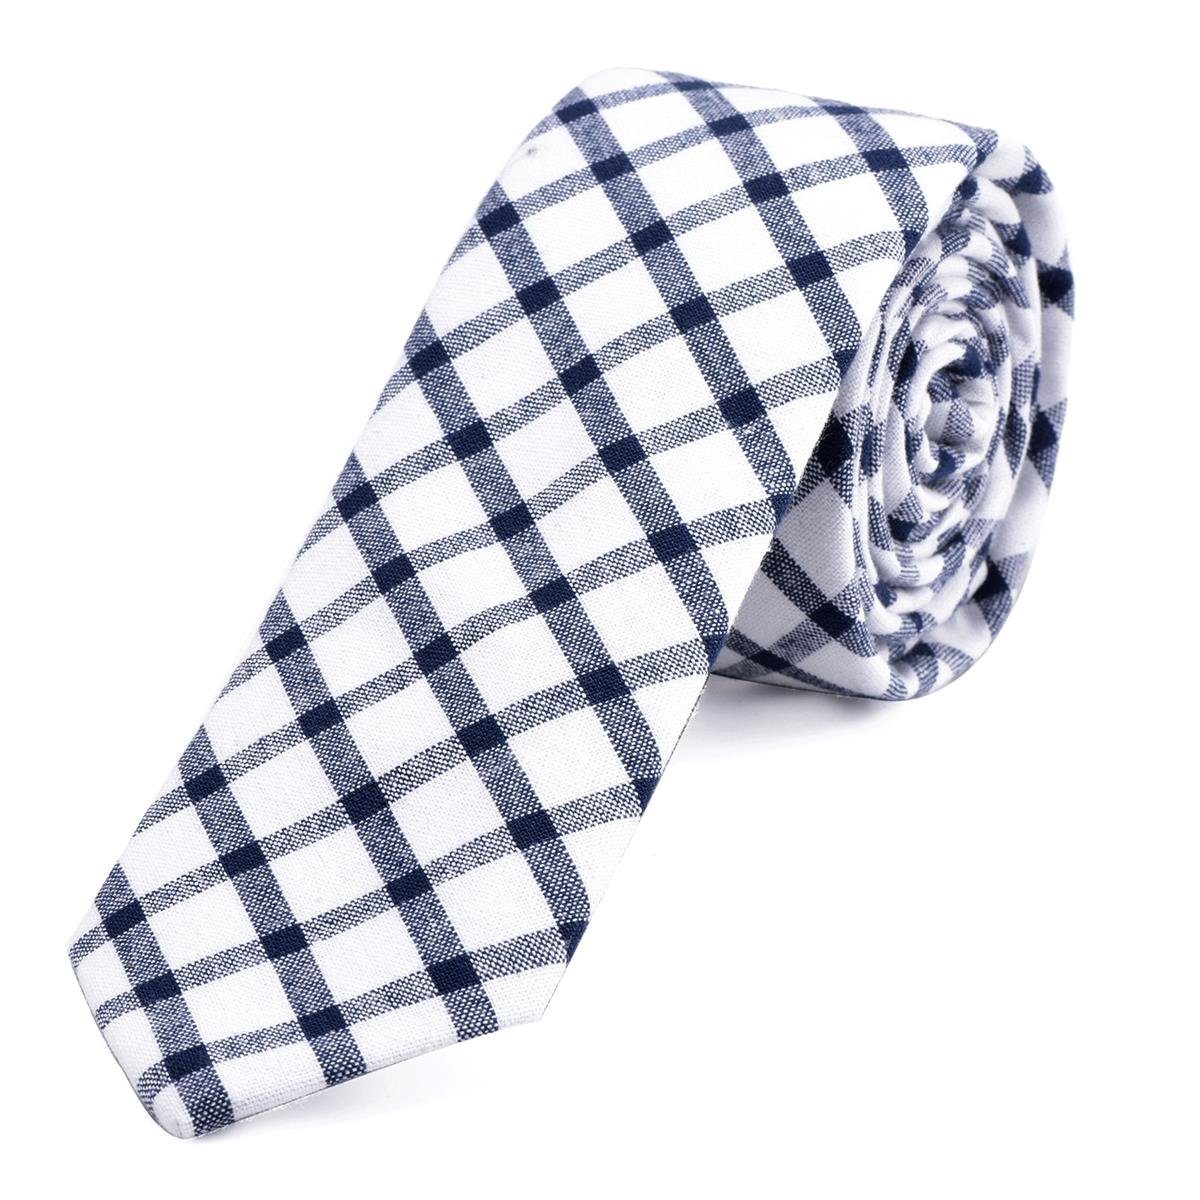 DonDon Krawatte Herren Krawatte 6 cm mit Karos oder Streifen (Packung, 1-St., 1x Krawatte) Baumwolle, kariert oder gestreift, für Büro oder festliche Veranstaltungen weiß-blau kariert